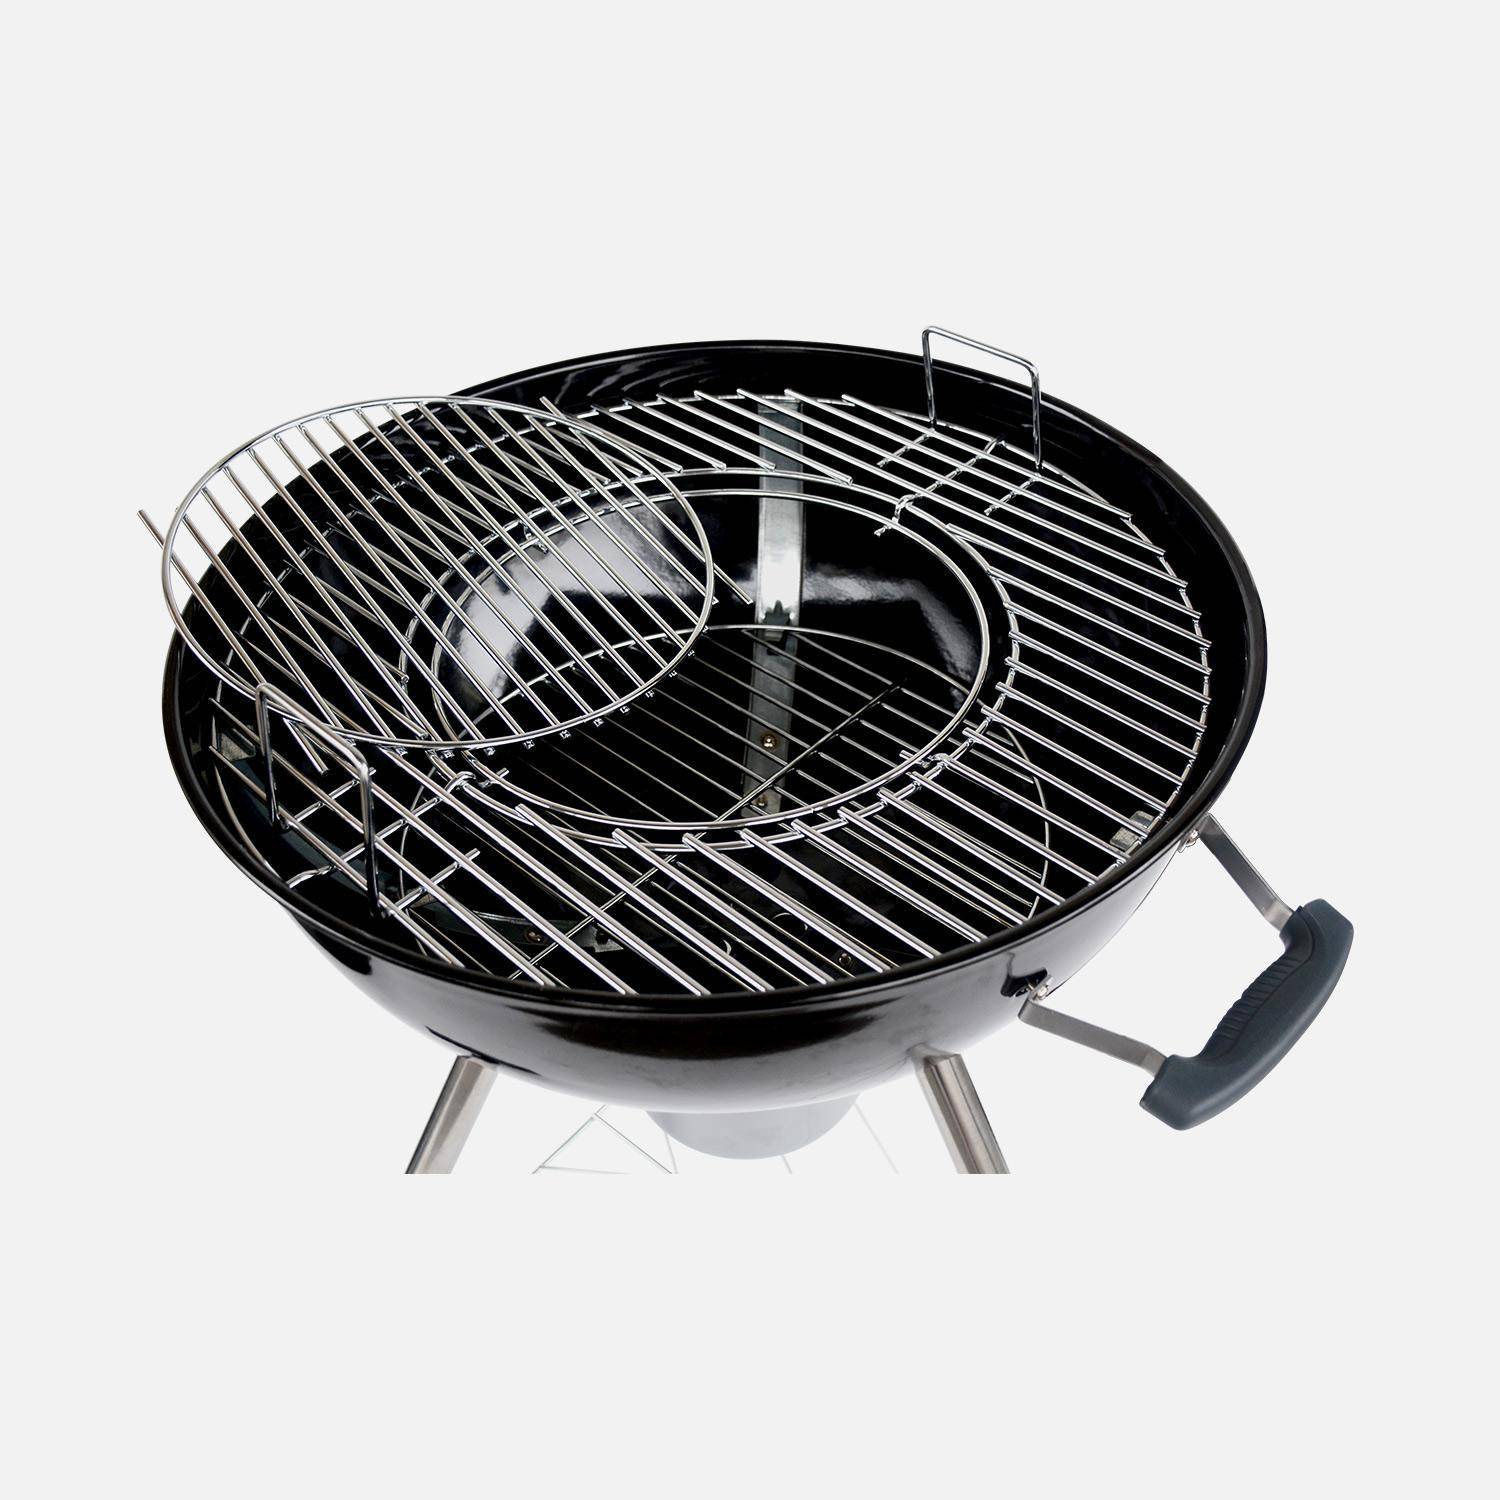 Barbecue PREMIUM charbon de bois Ø 57cm - Charles - Noir émaillé, barbecue avec grille amovible, aérateurs, fumoir, récupérateur de cendres, souffleur offert Photo6